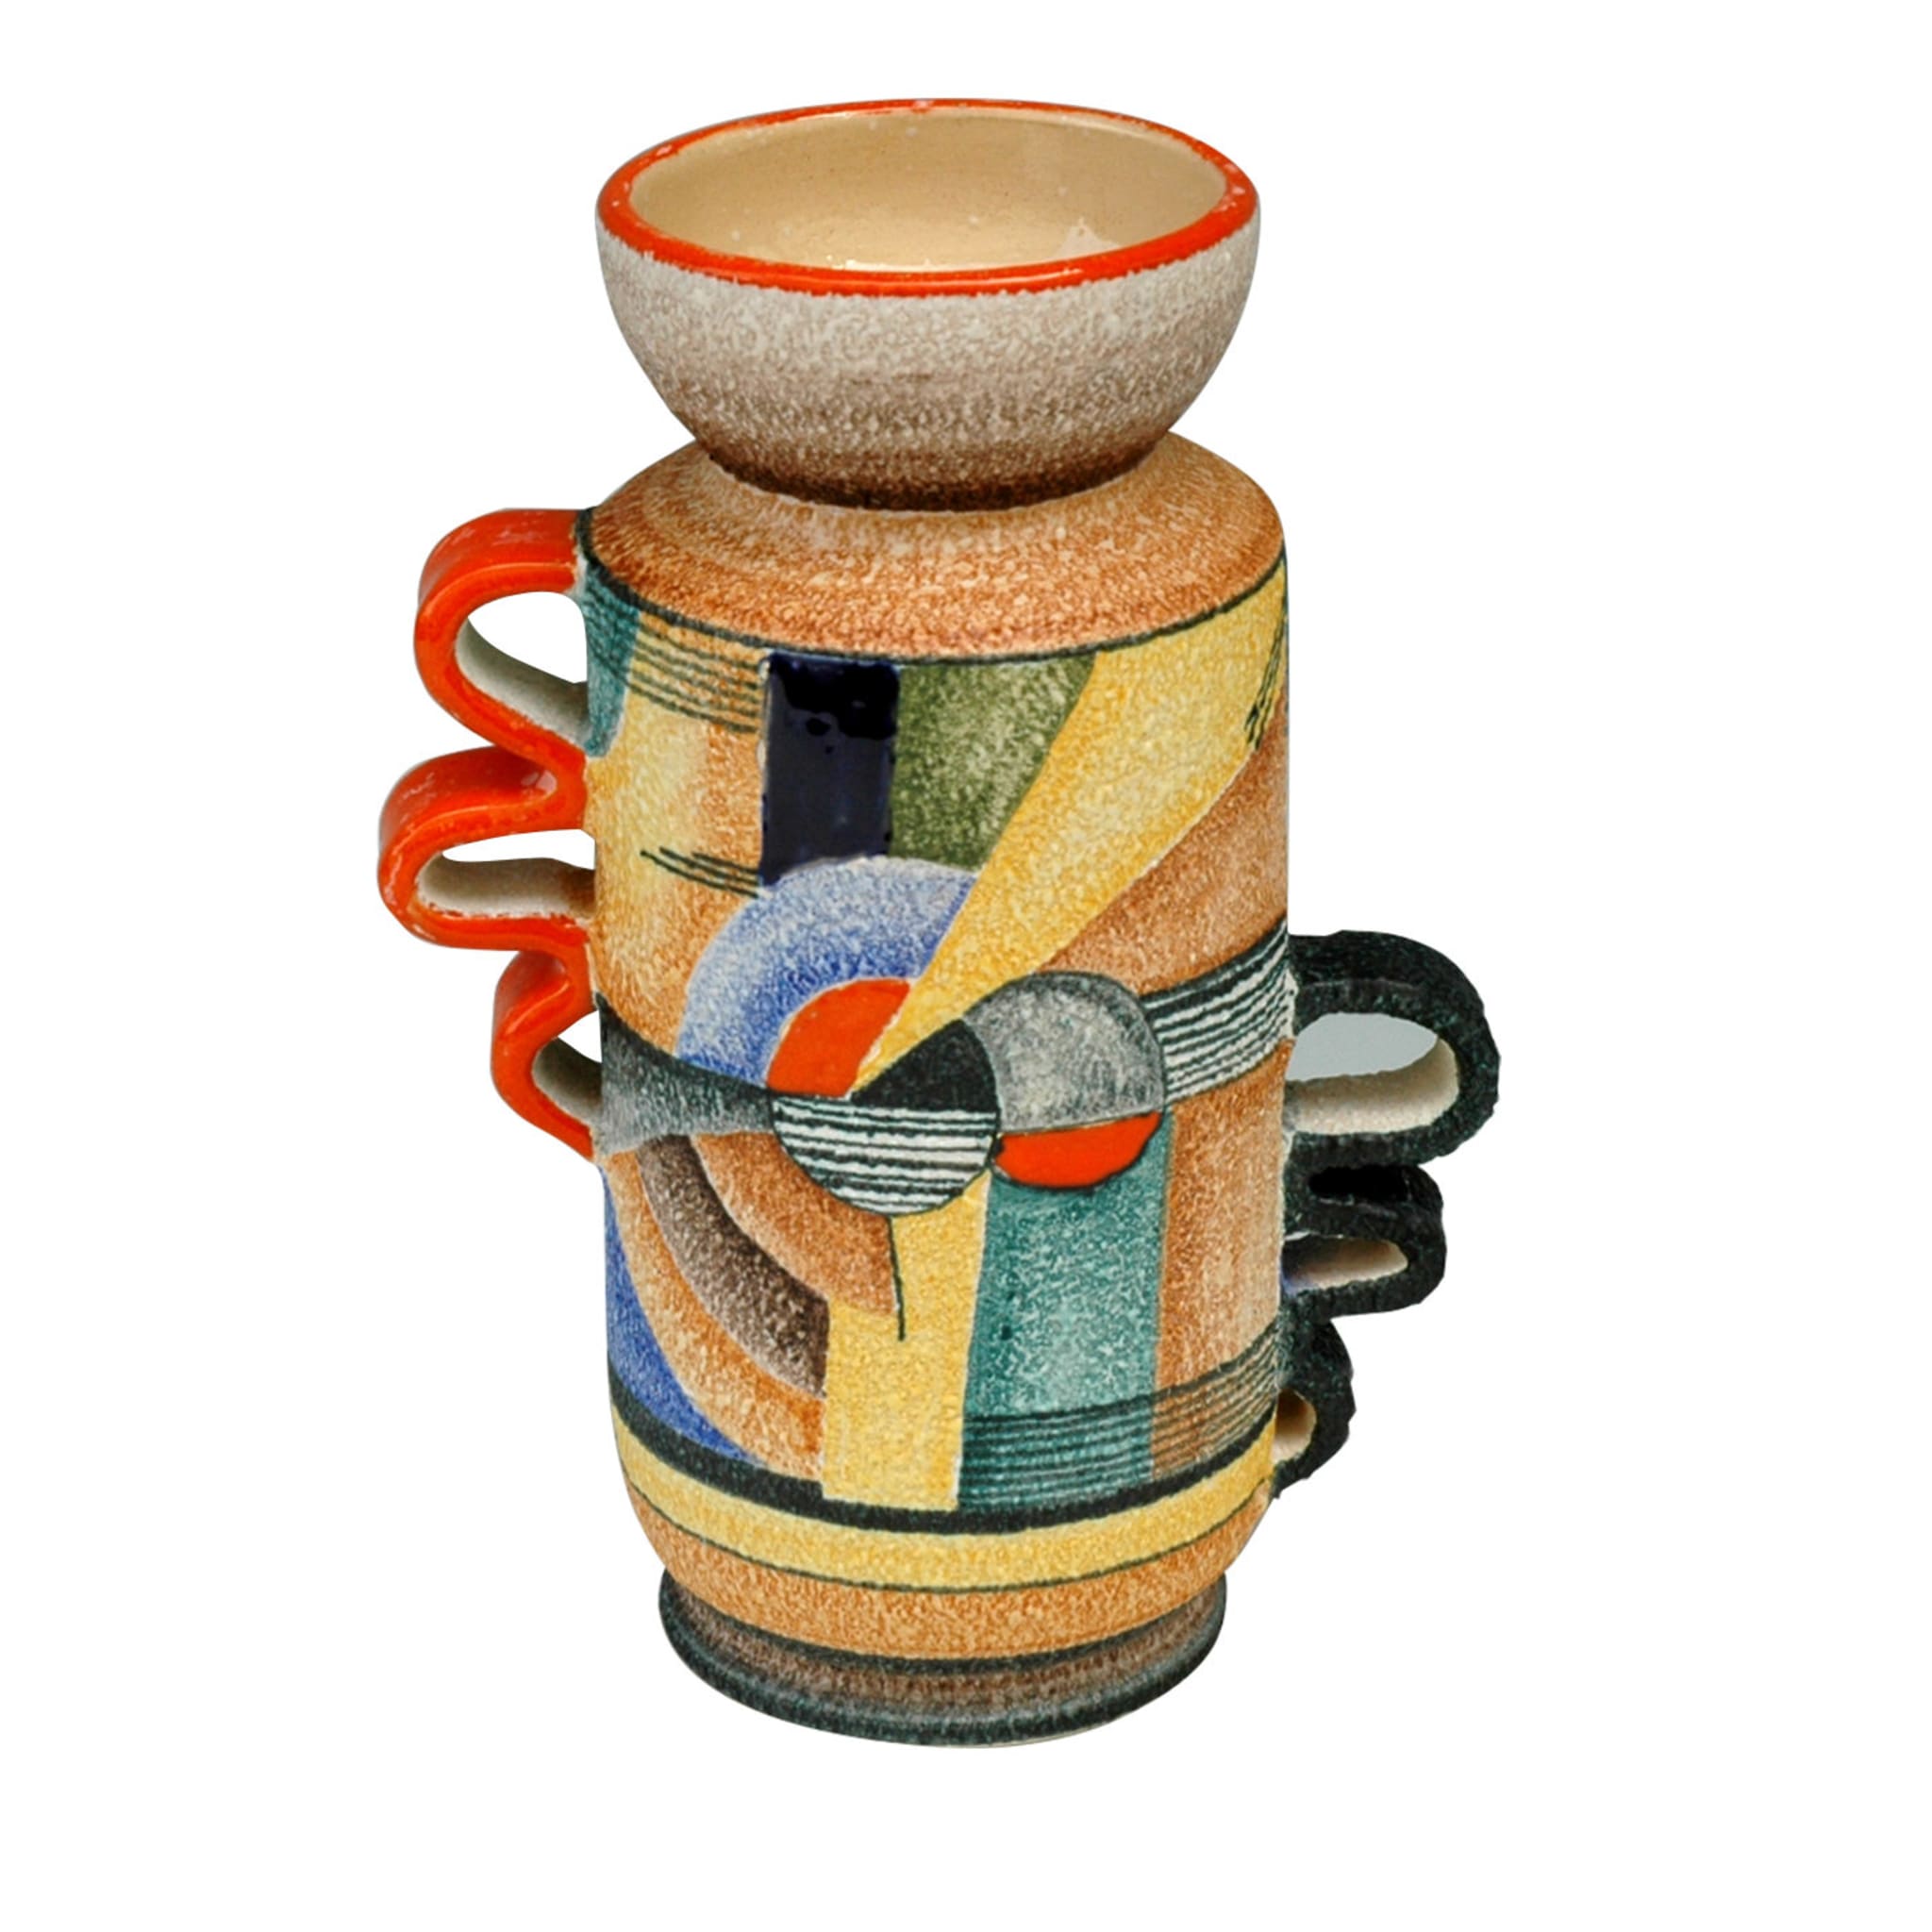 Snello Futurista Ceramic Vase - Main view